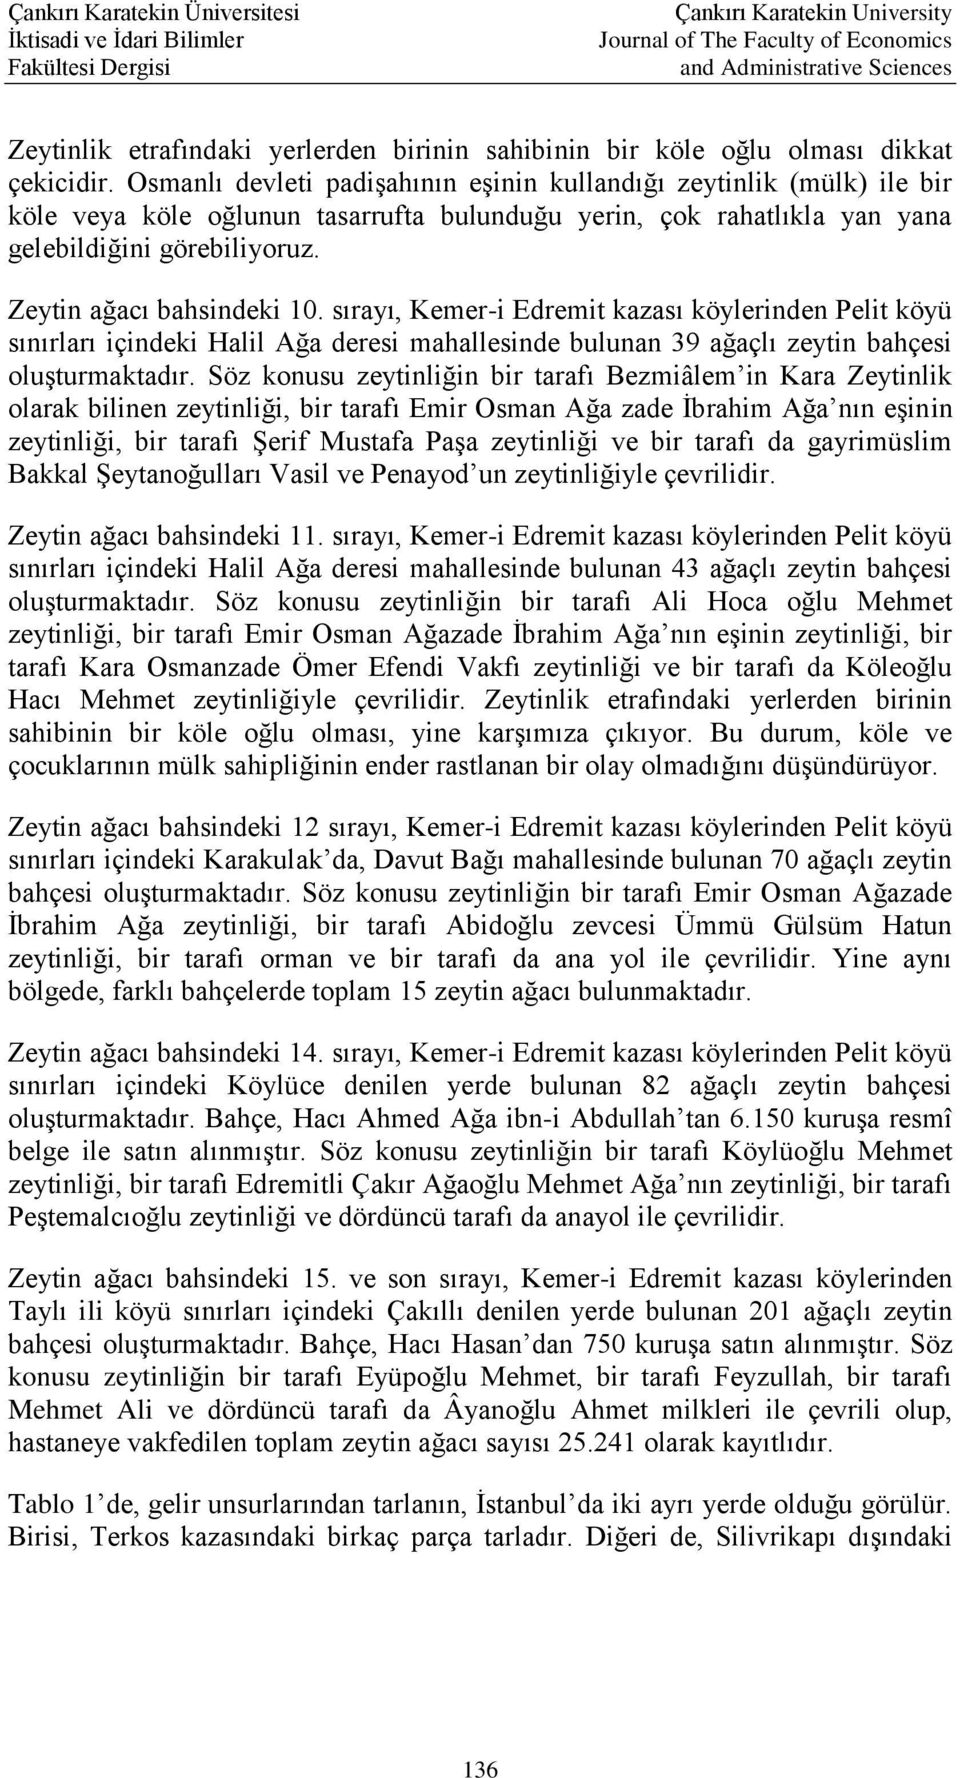 Zeytin ağacı bahsindeki 10. sırayı, Kemer-i Edremit kazası köylerinden Pelit köyü sınırları içindeki Halil Ağa deresi mahallesinde bulunan 39 ağaçlı zeytin bahçesi oluşturmaktadır.